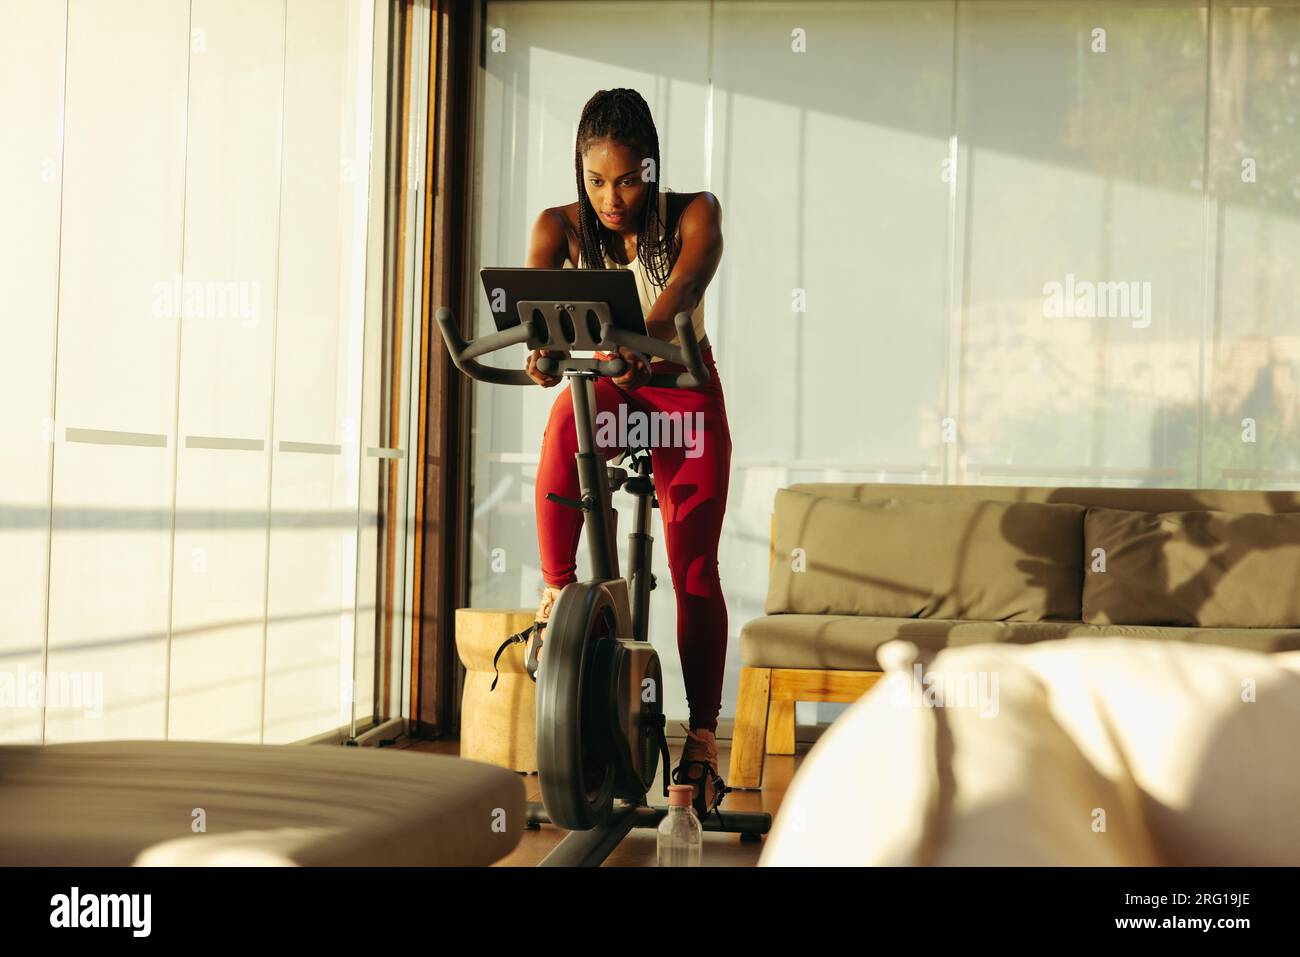 Schwarze Frau erreicht ihre Fitnessziele mit Hilfe eines Online-Radkurses. Mit ihrem Tablet vor sich folgt sie dem virtuellen Stockfoto